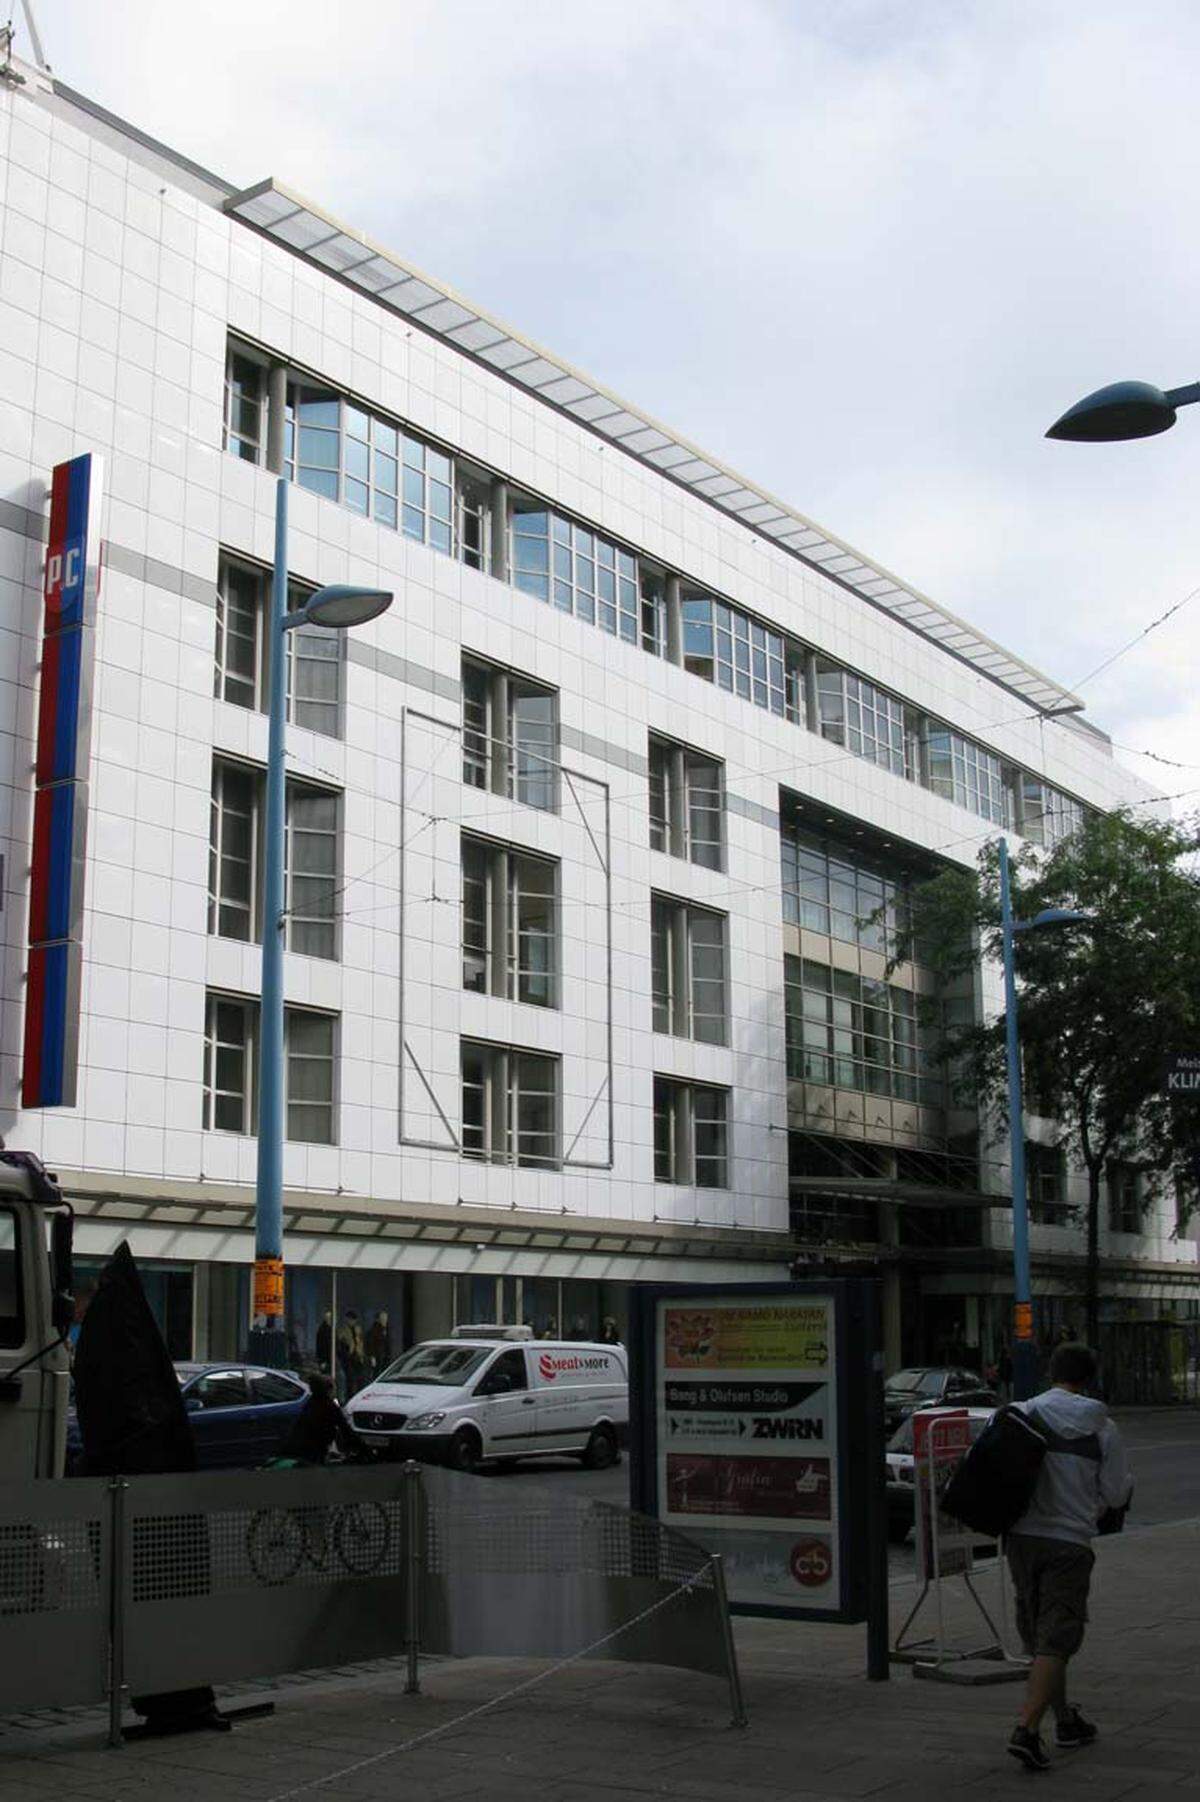 1998 eröffnete im ehemaligen Warenhaus Herzmansky eine Peek &amp; Cloppenburg Filiale. Am Gründergebäude in der Stiftsgasse und auf den Marmortafeln im Erdgeschoss des Gebäudes ist bis heute noch die Aufschrift "A. Herzmansky" in goldener Umrahmung zu lesen.